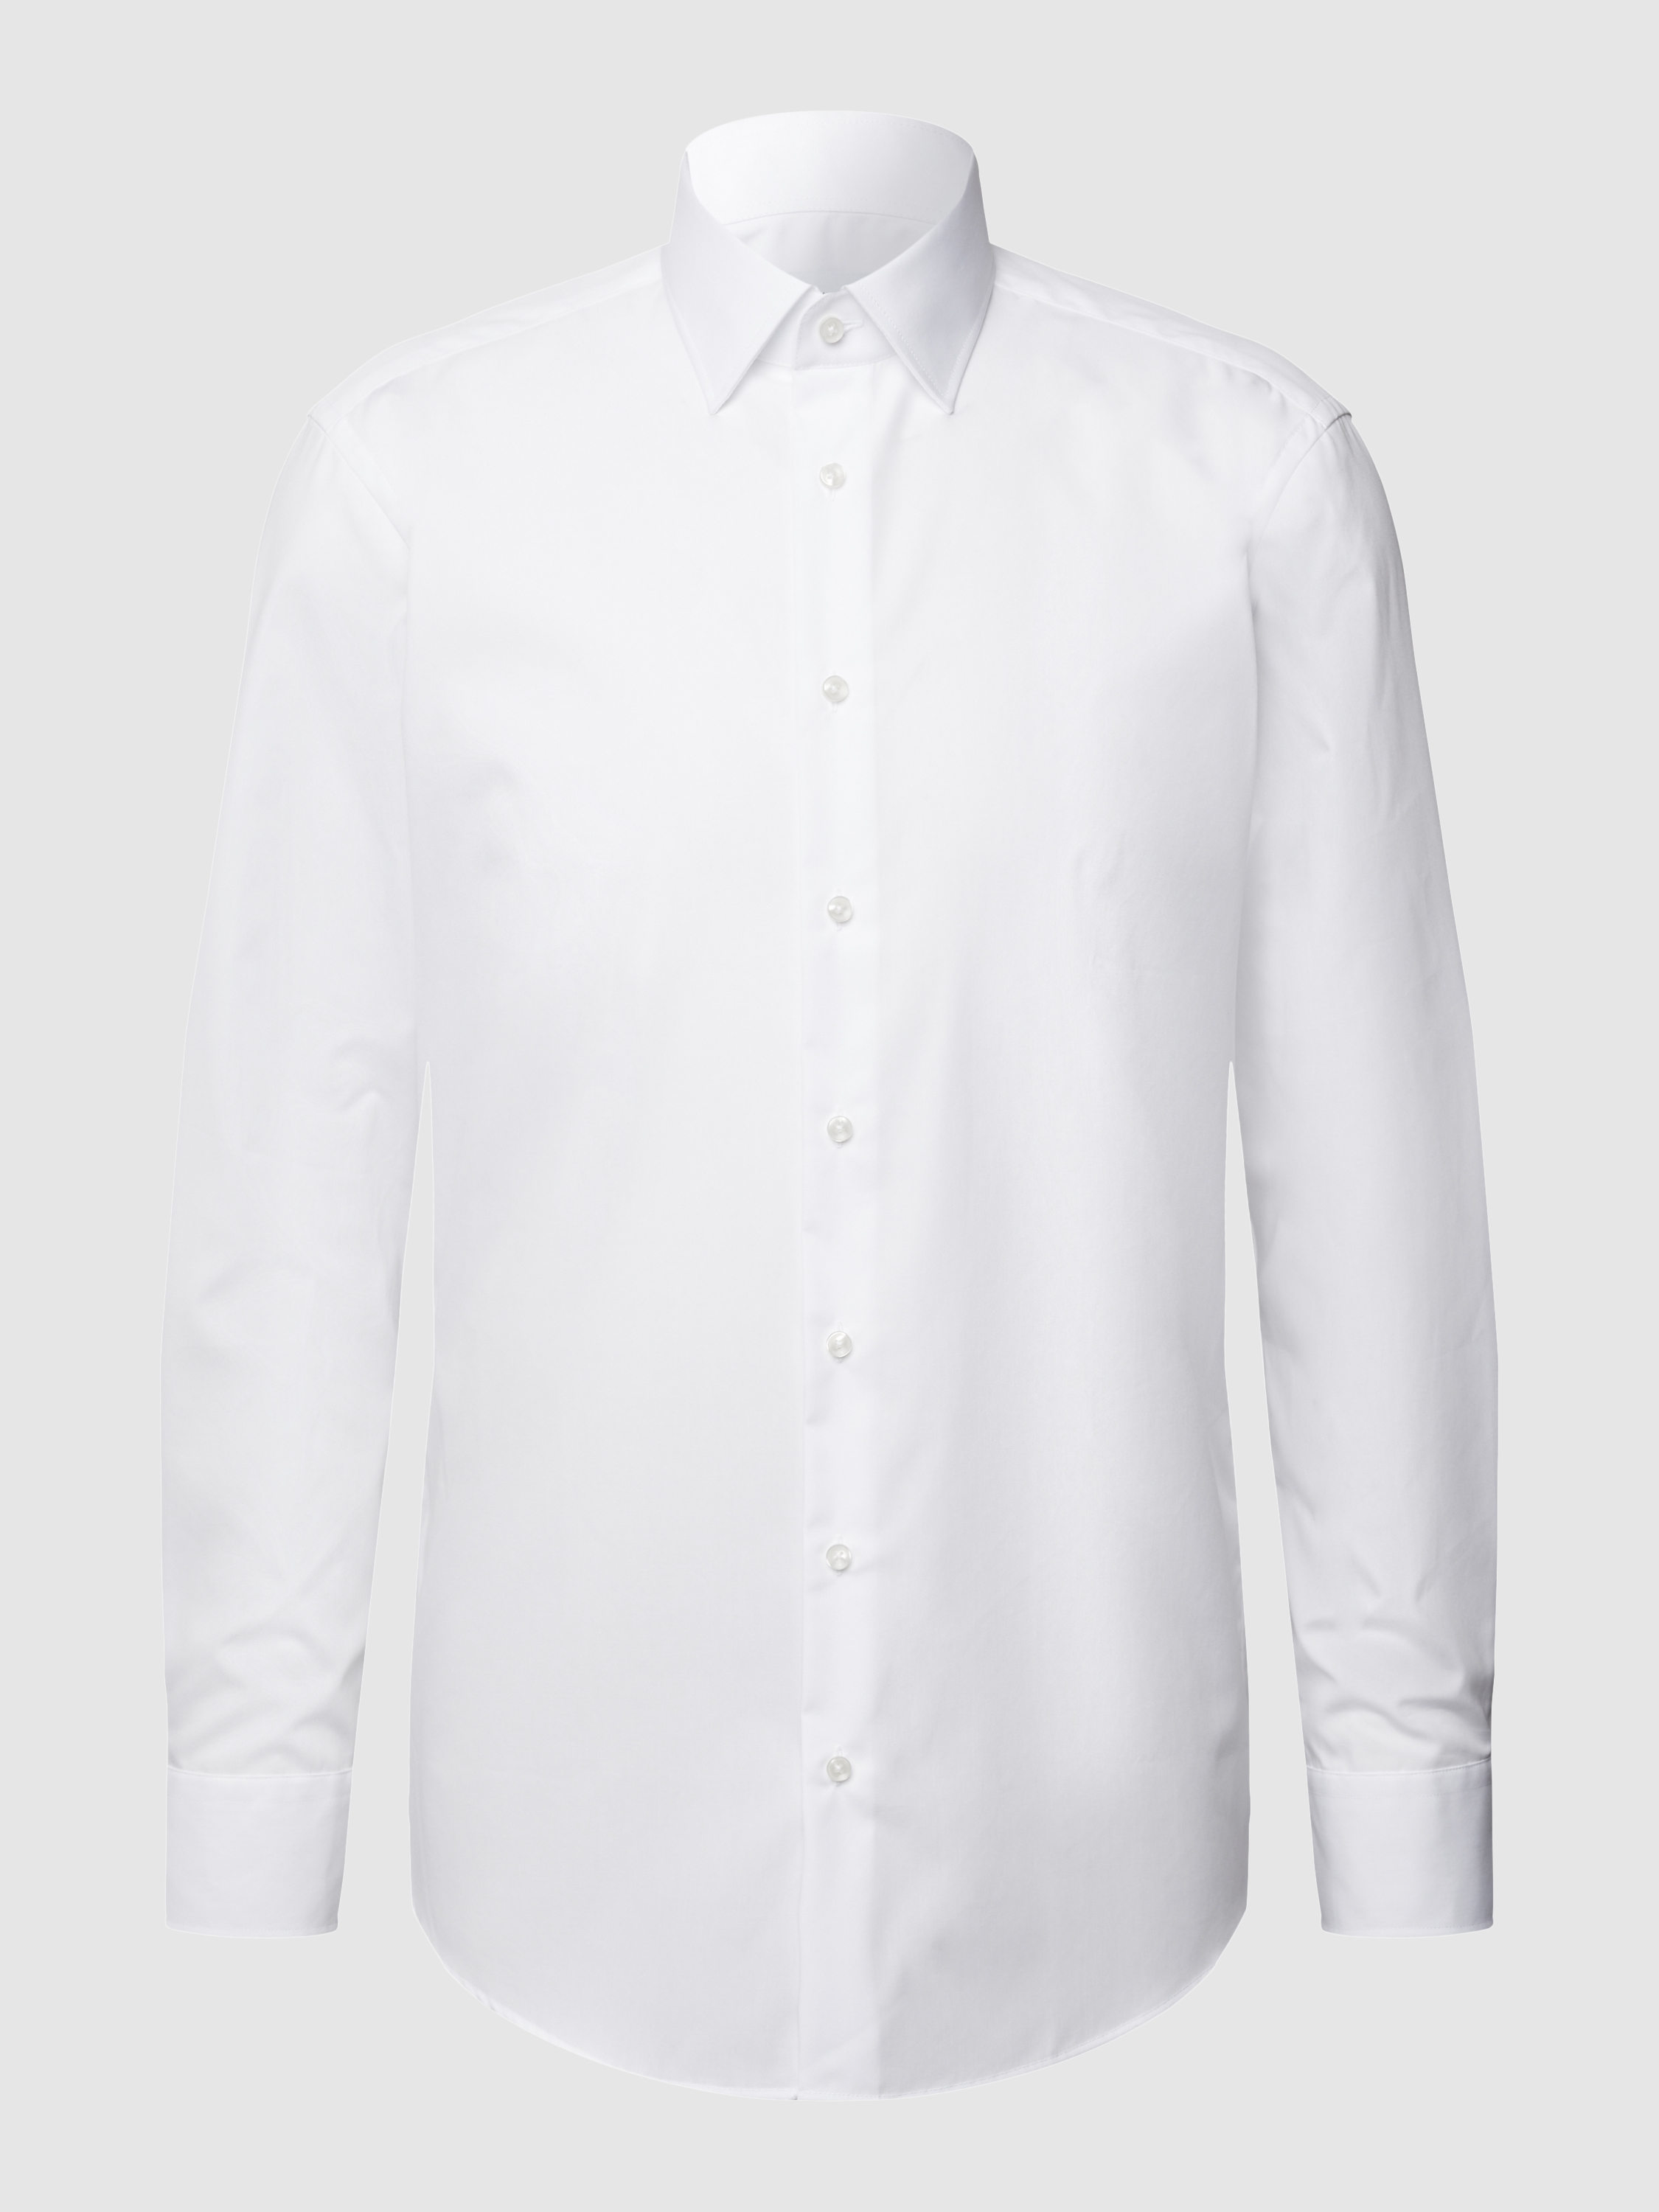 Рубашка мужская Christian Berg Men 1117307 белая 45/46 (доставка из-за рубежа)